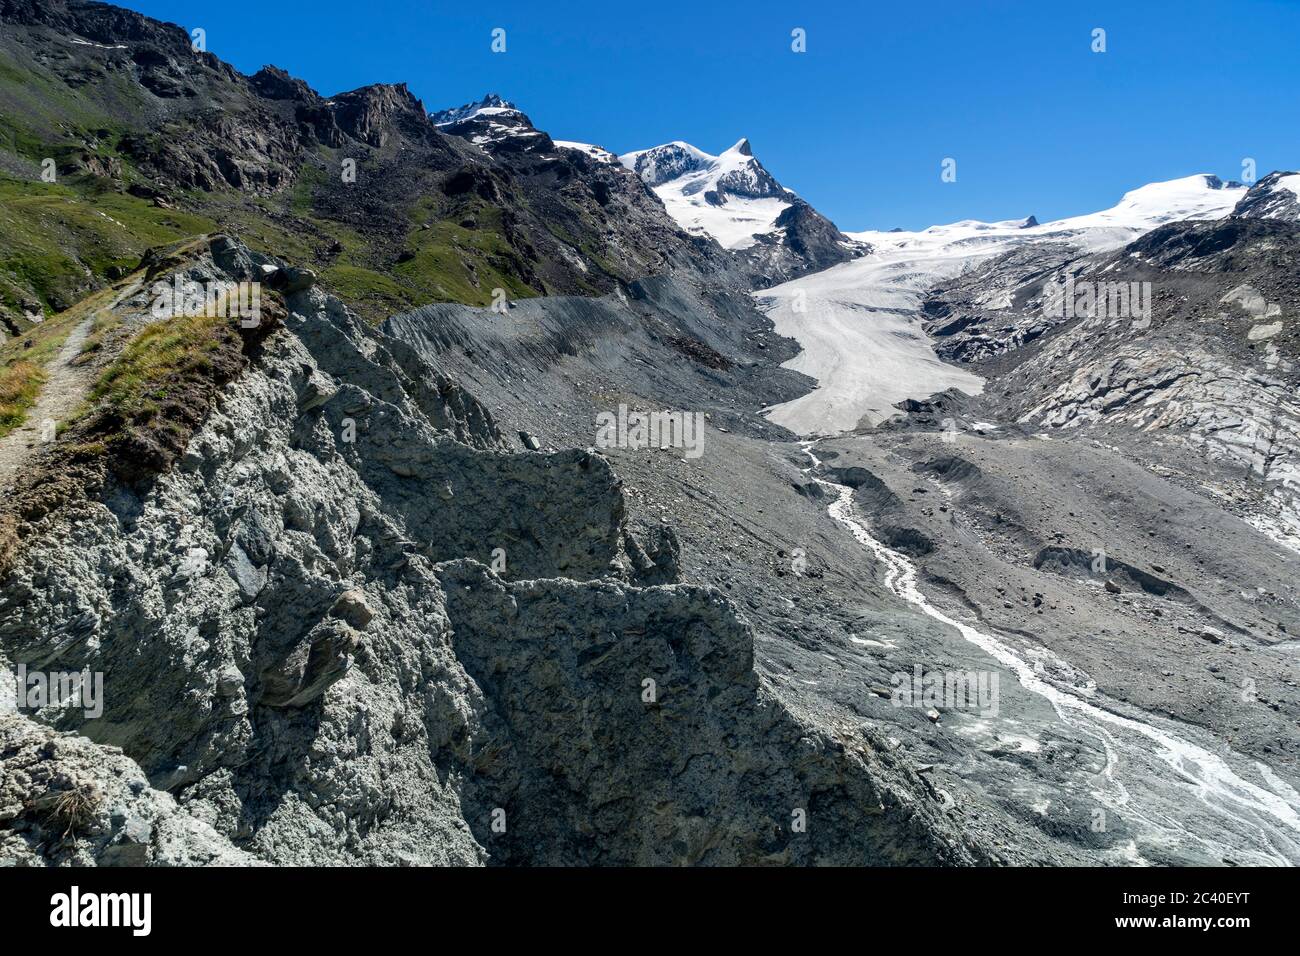 Der zurückschmelzende Findelgletscher lässt eine Landschaft von Moränen und Geröll zurück.  Hinten das markante Adlerhorn und links davon das Strahlho Stock Photo